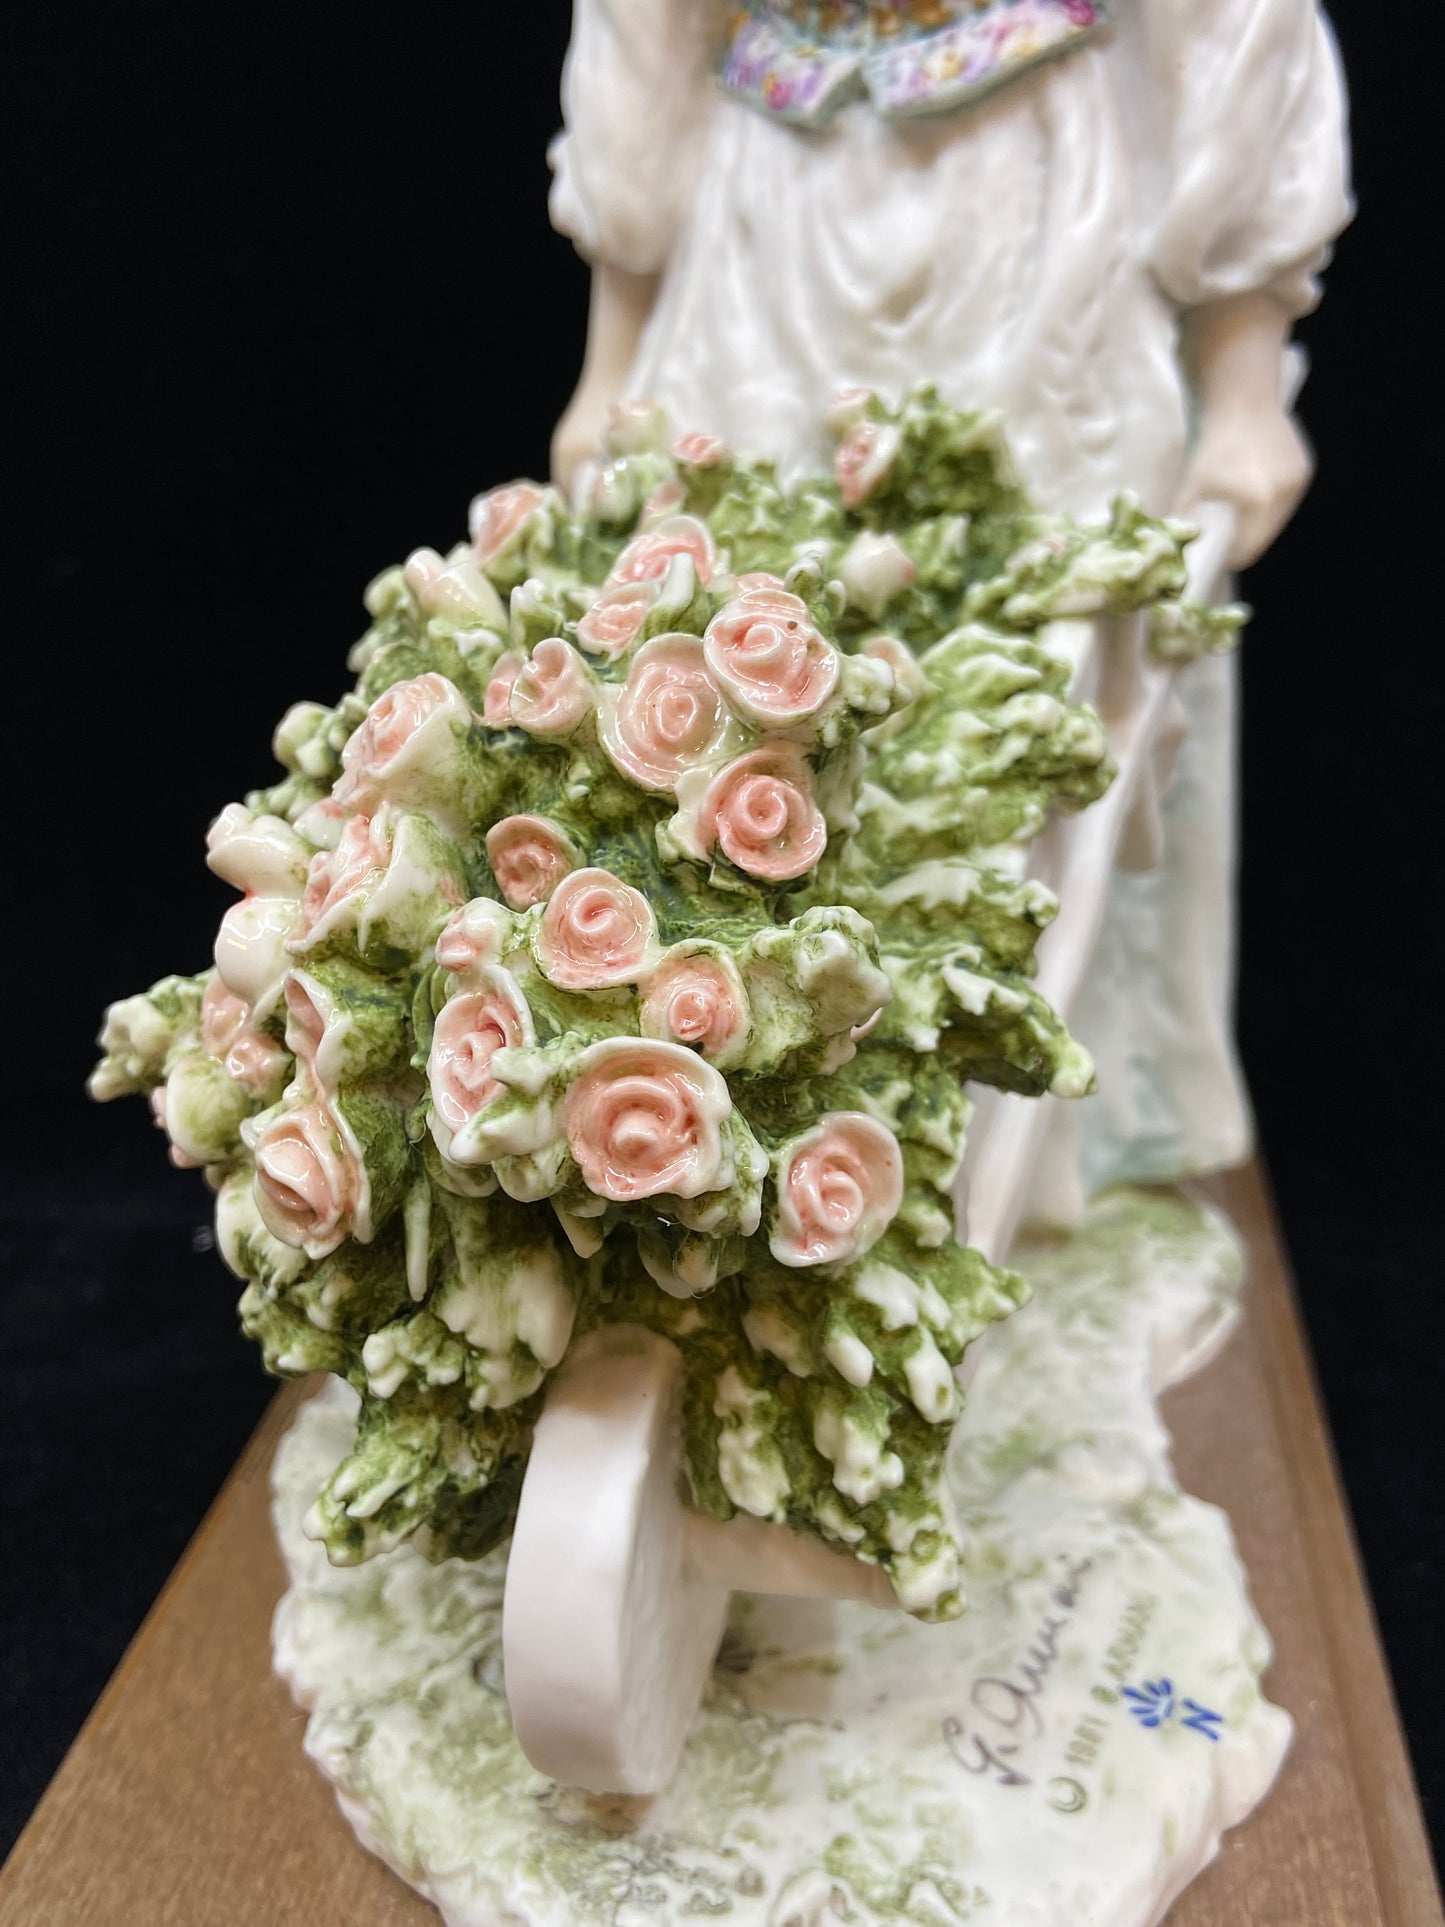 Armani "Lady with Flower Wheelbarrow" Figurine (27741)